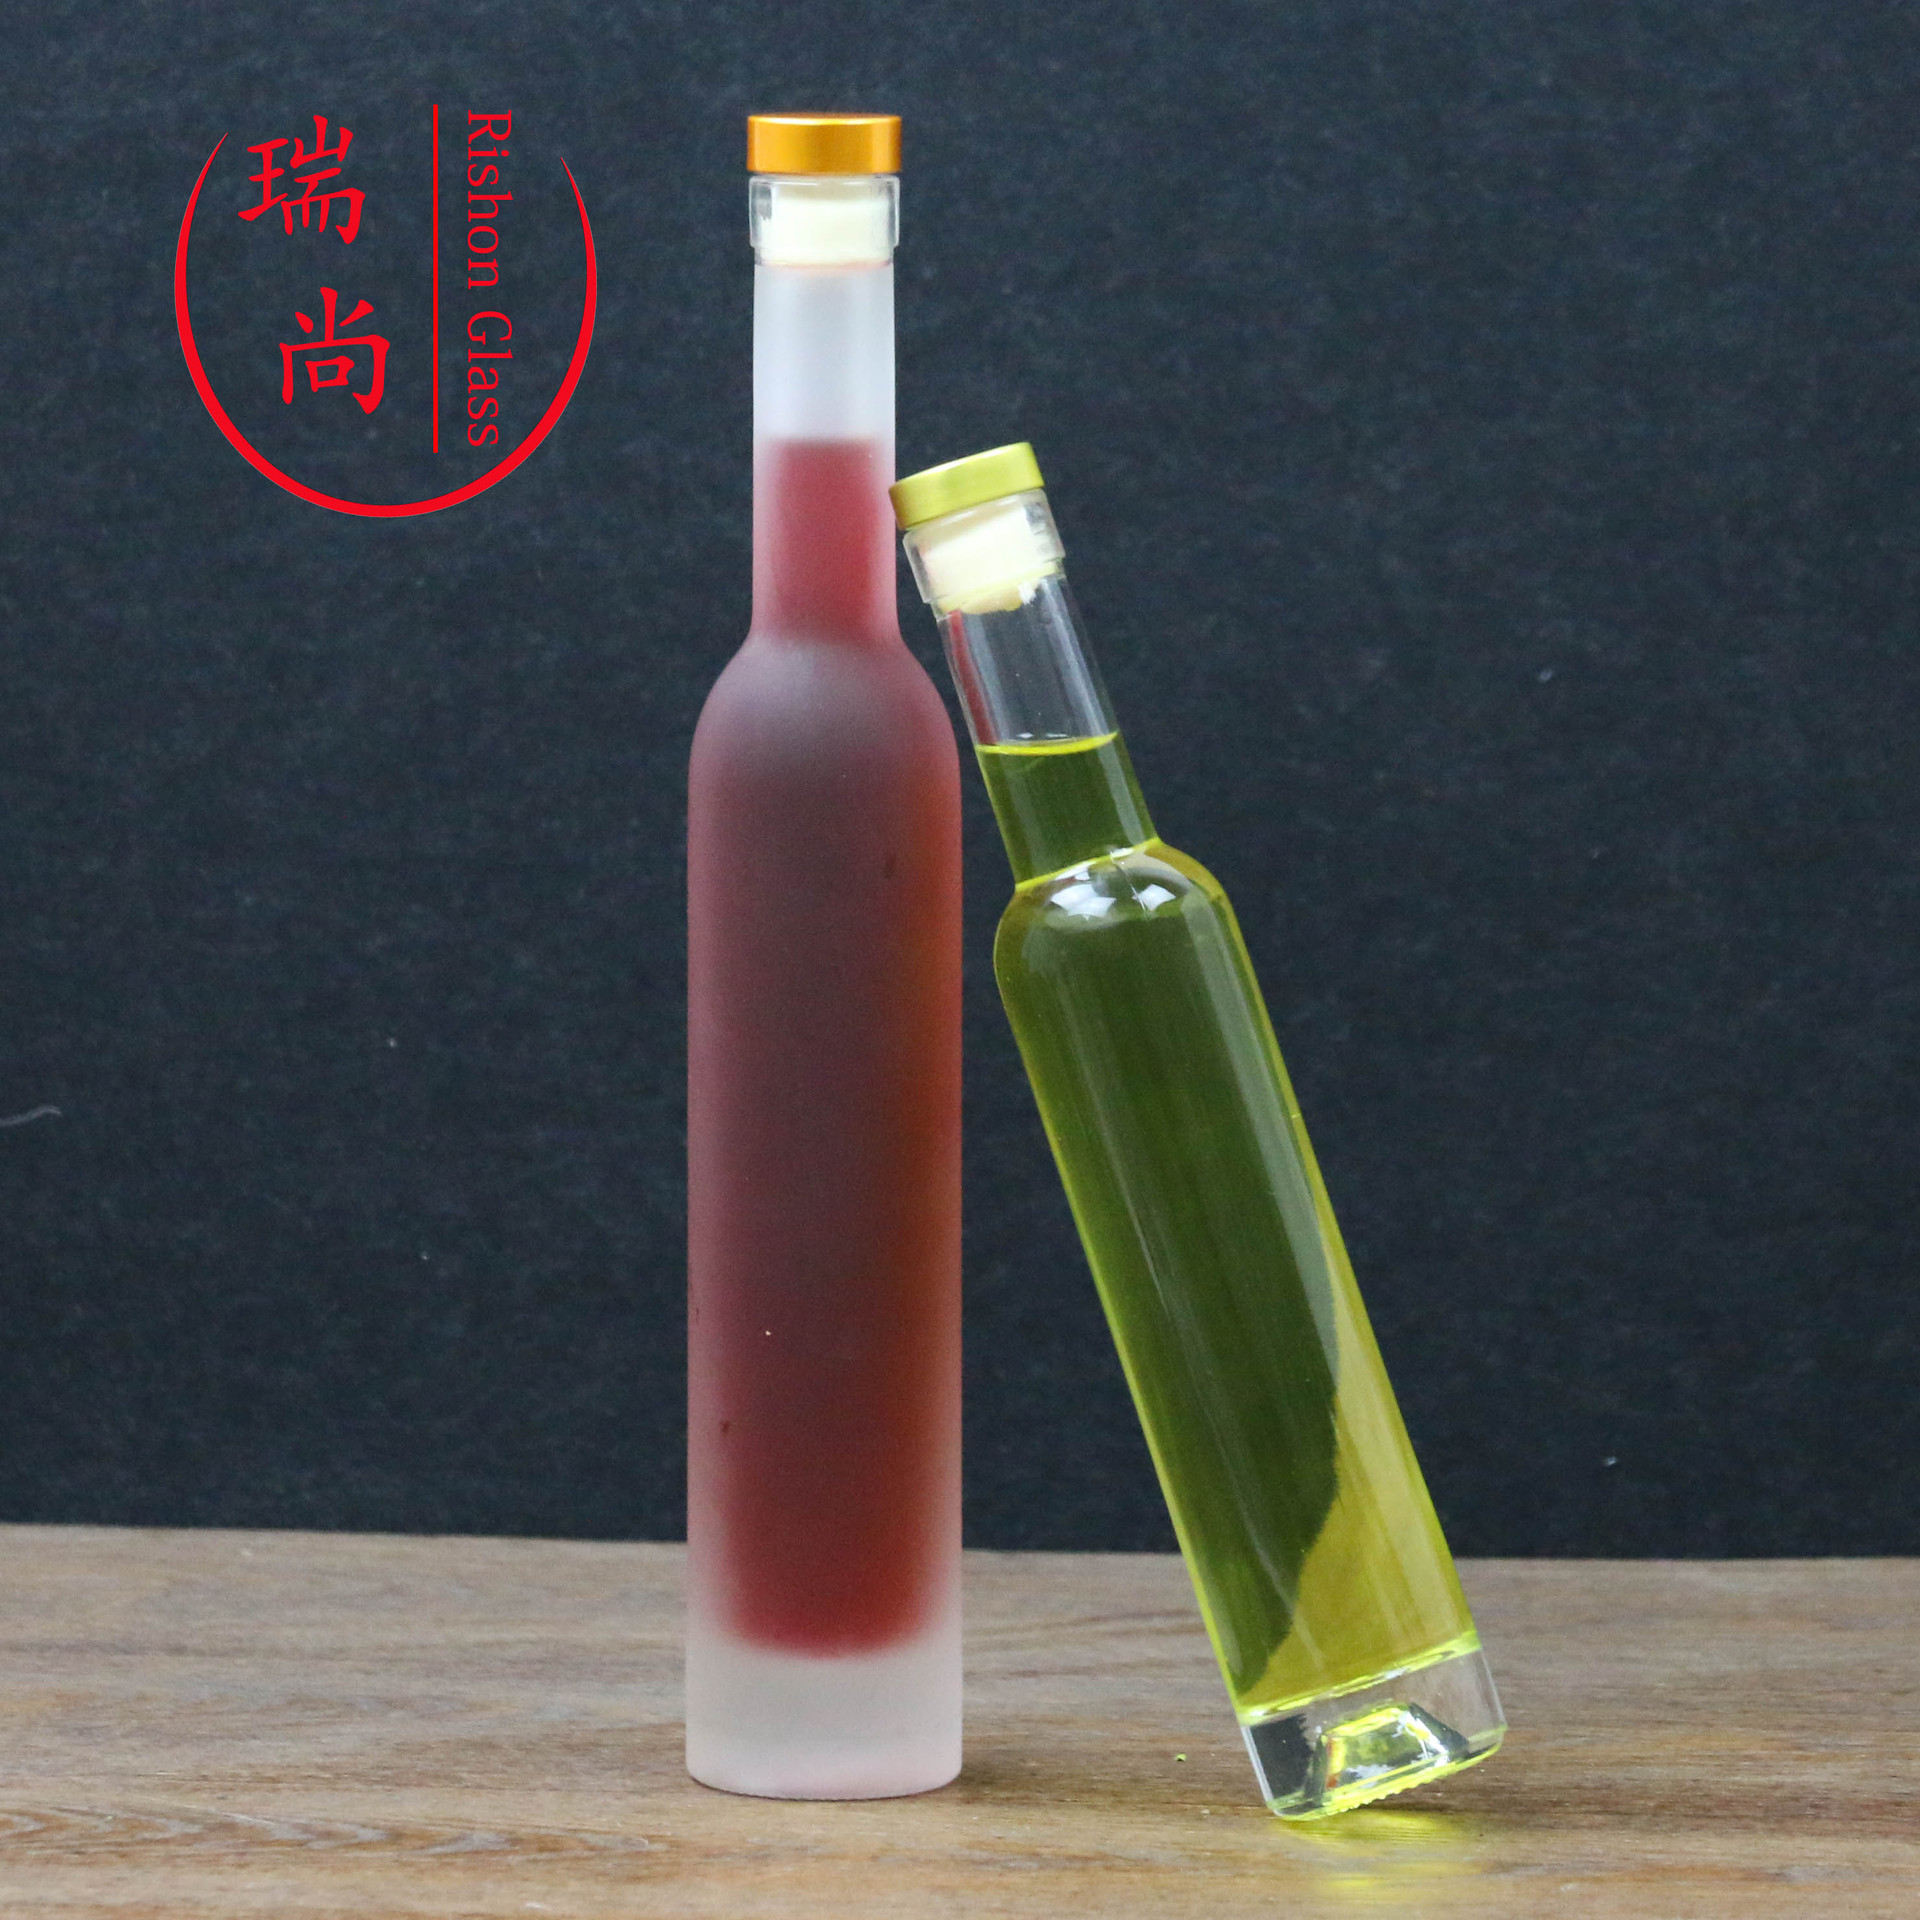 375ml冰酒瓶厂家直销红酒瓶出口质量木塞厚底红酒瓶蒙砂洋酒瓶示例图8